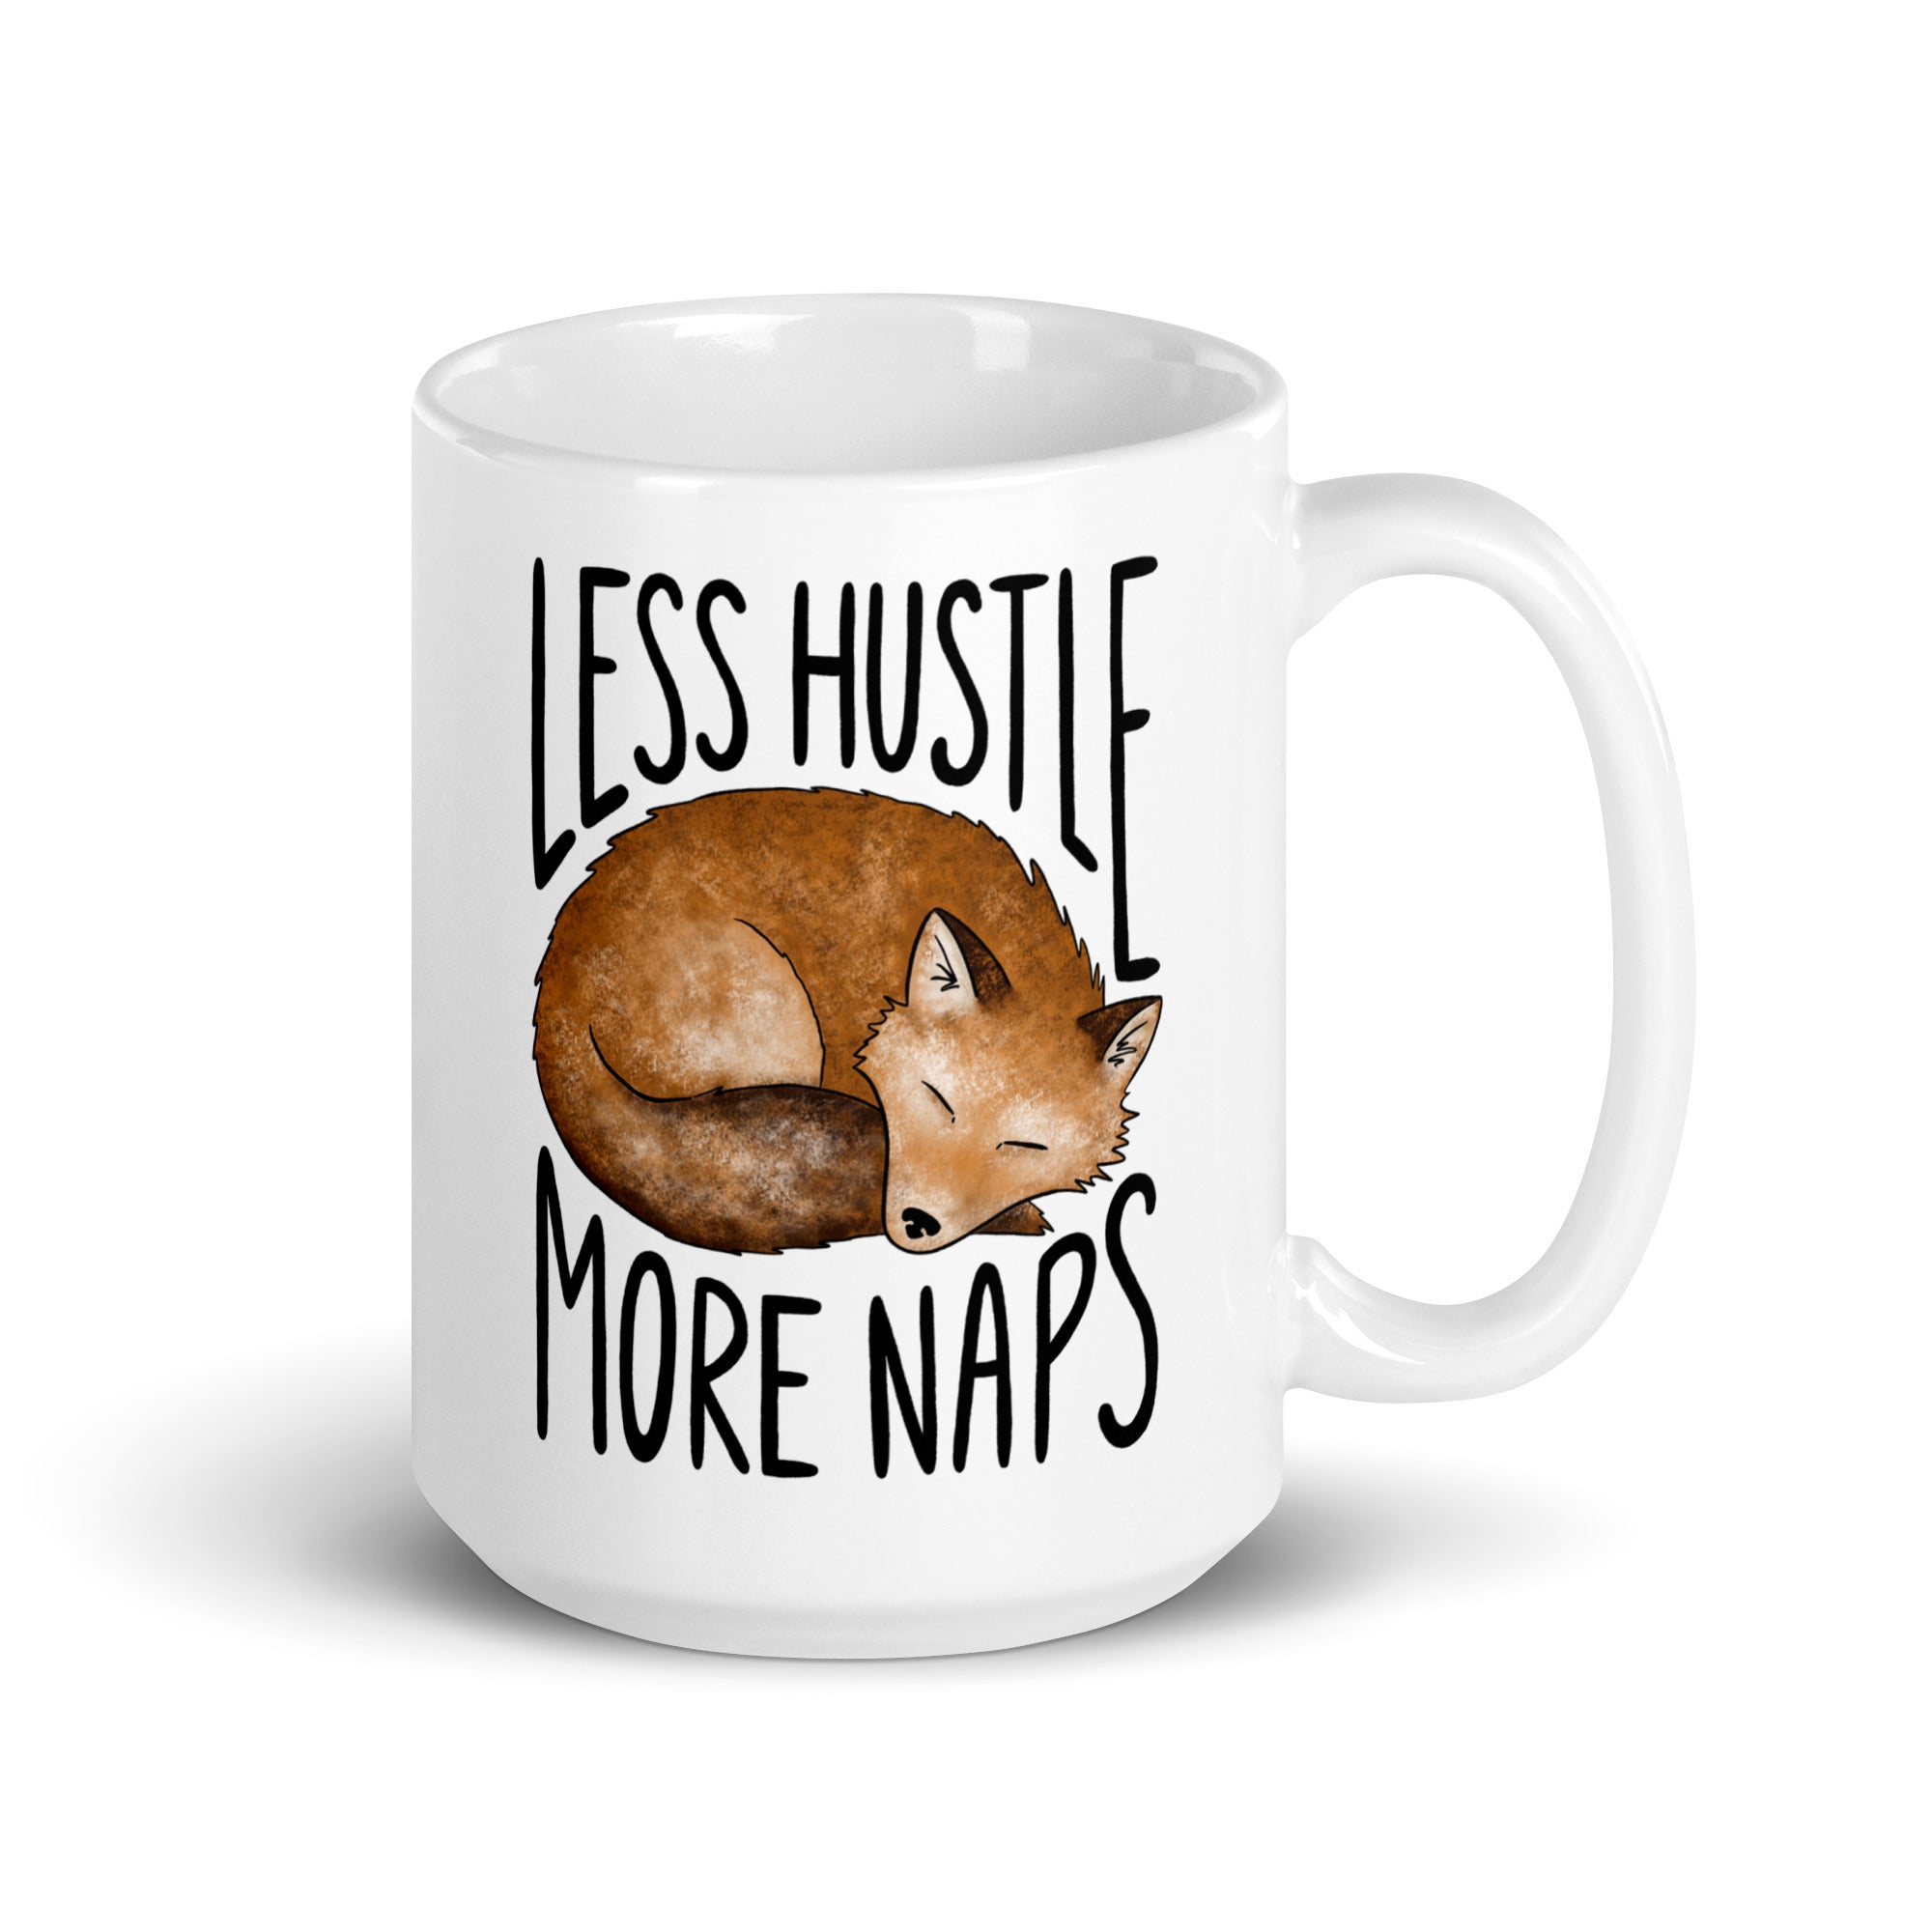 Less Hustle More Naps Mug